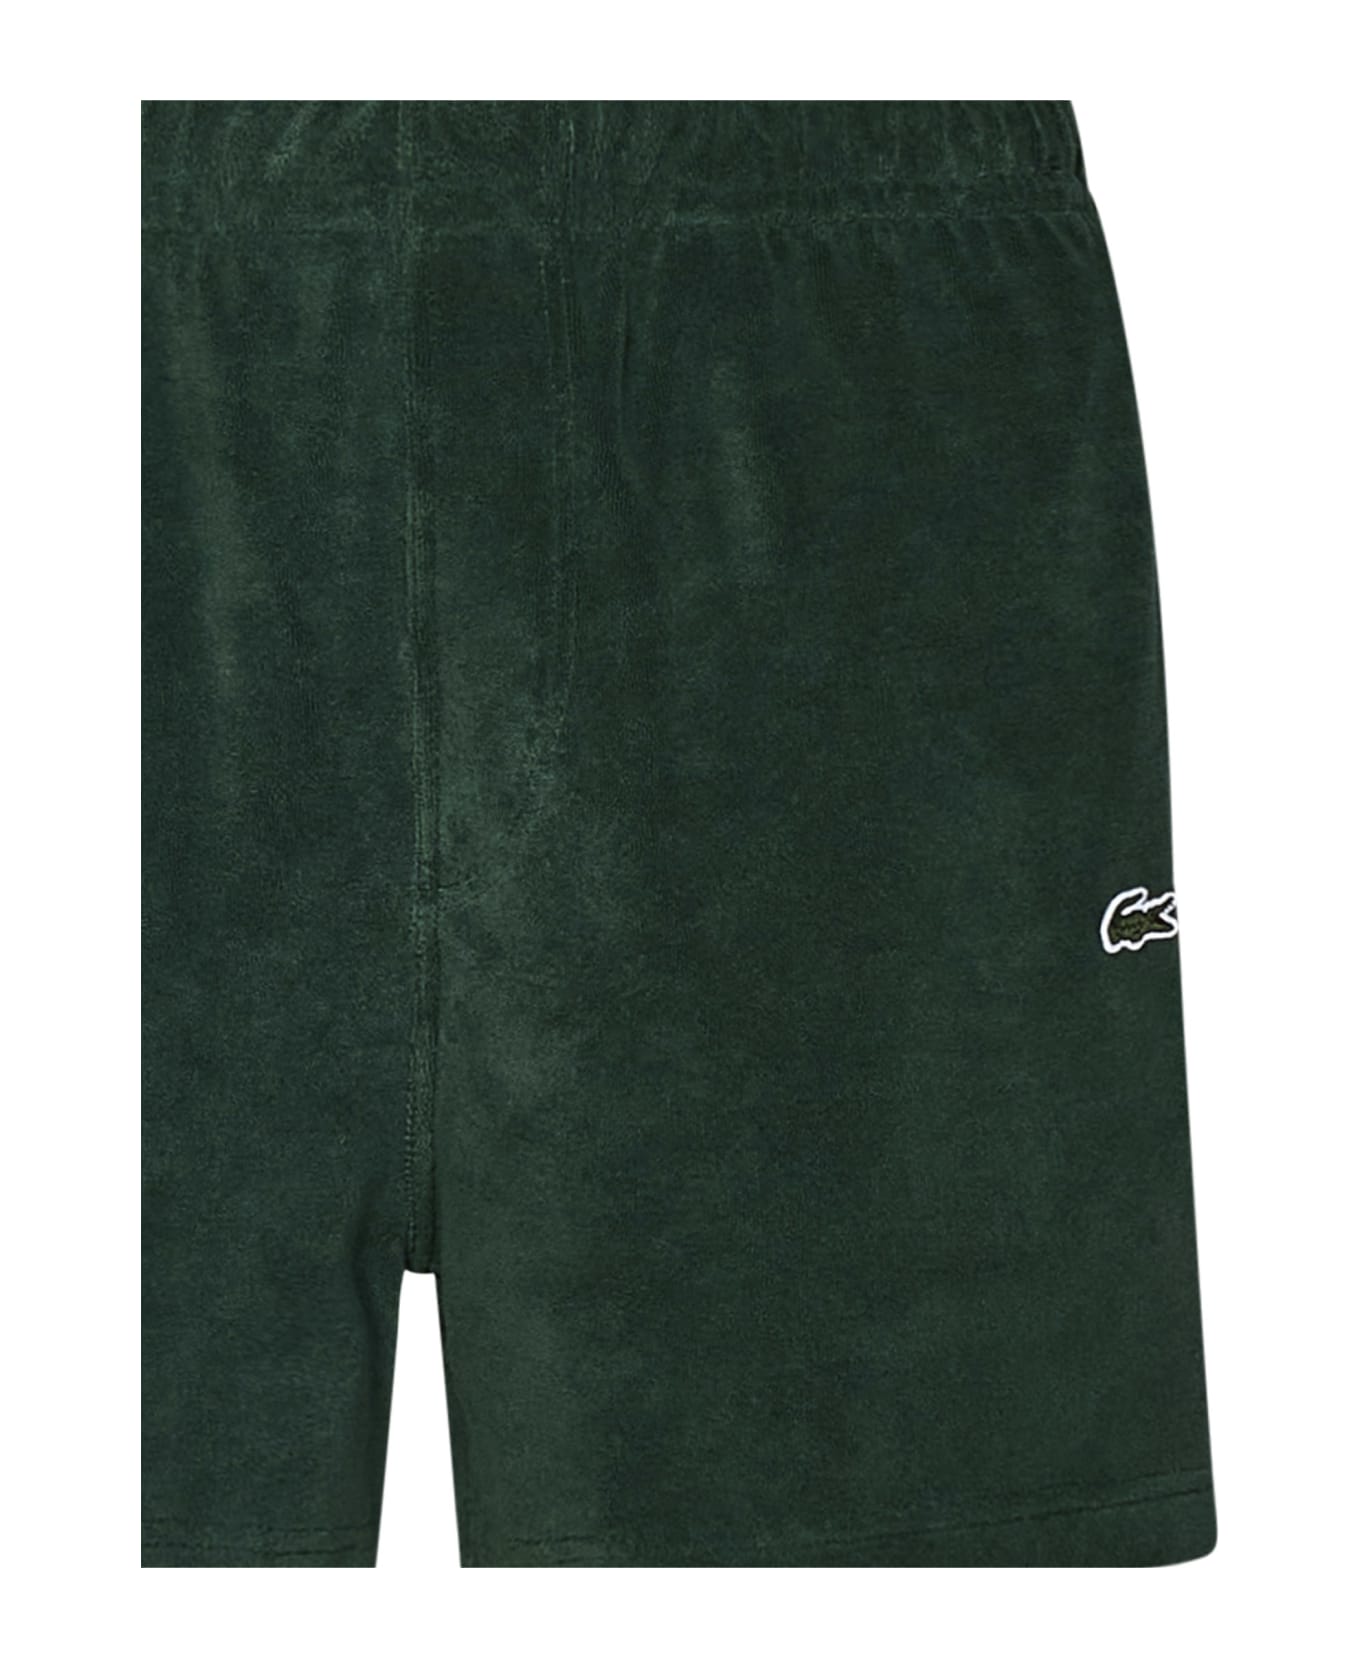 Lacoste Paris Shorts - Green